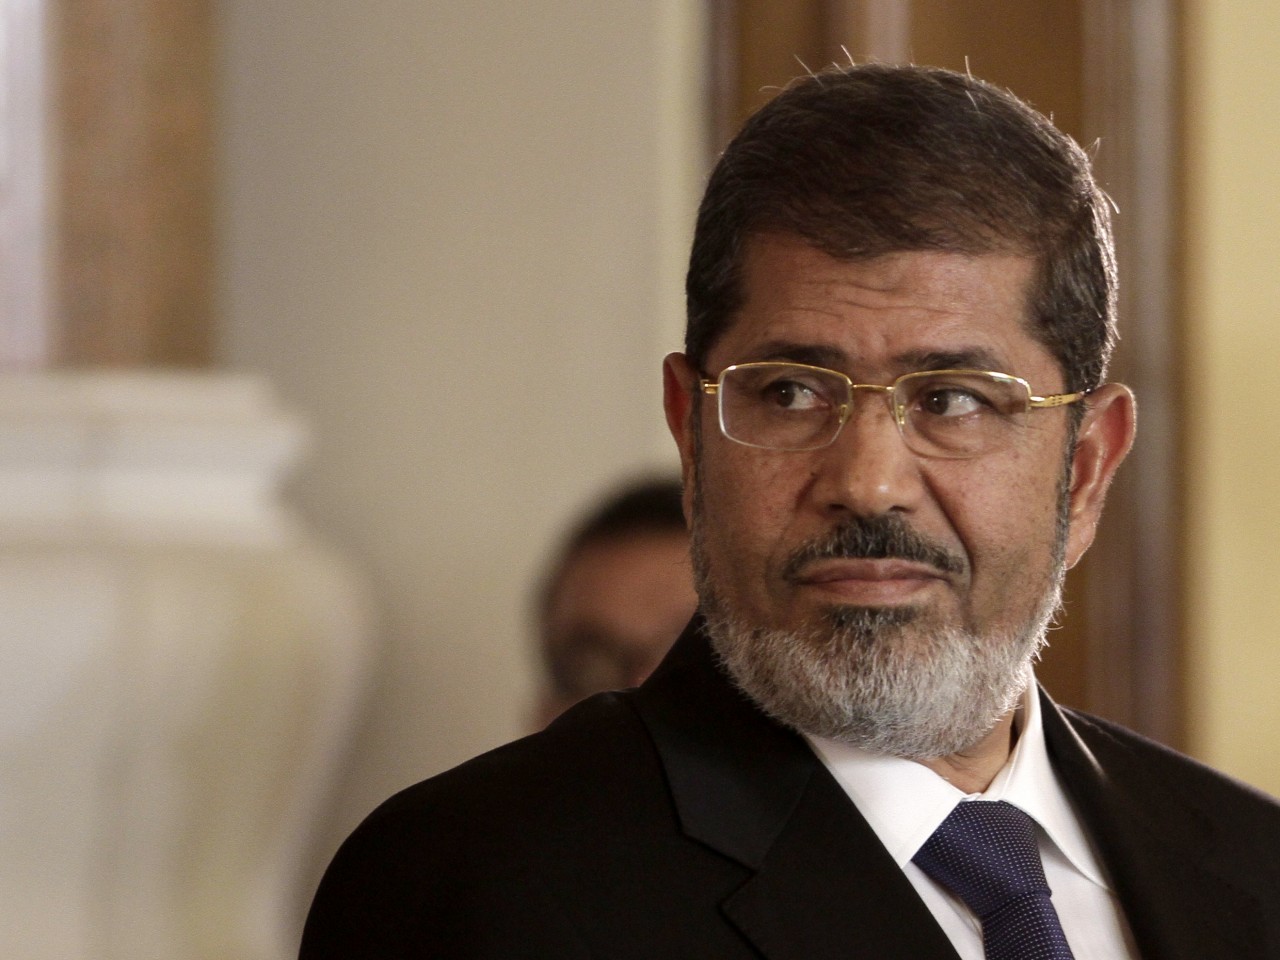 Ο Μόρσι απορρίπτει την εξουσία των δικαστών και δεν αναγνωρίζει τη δίκη του